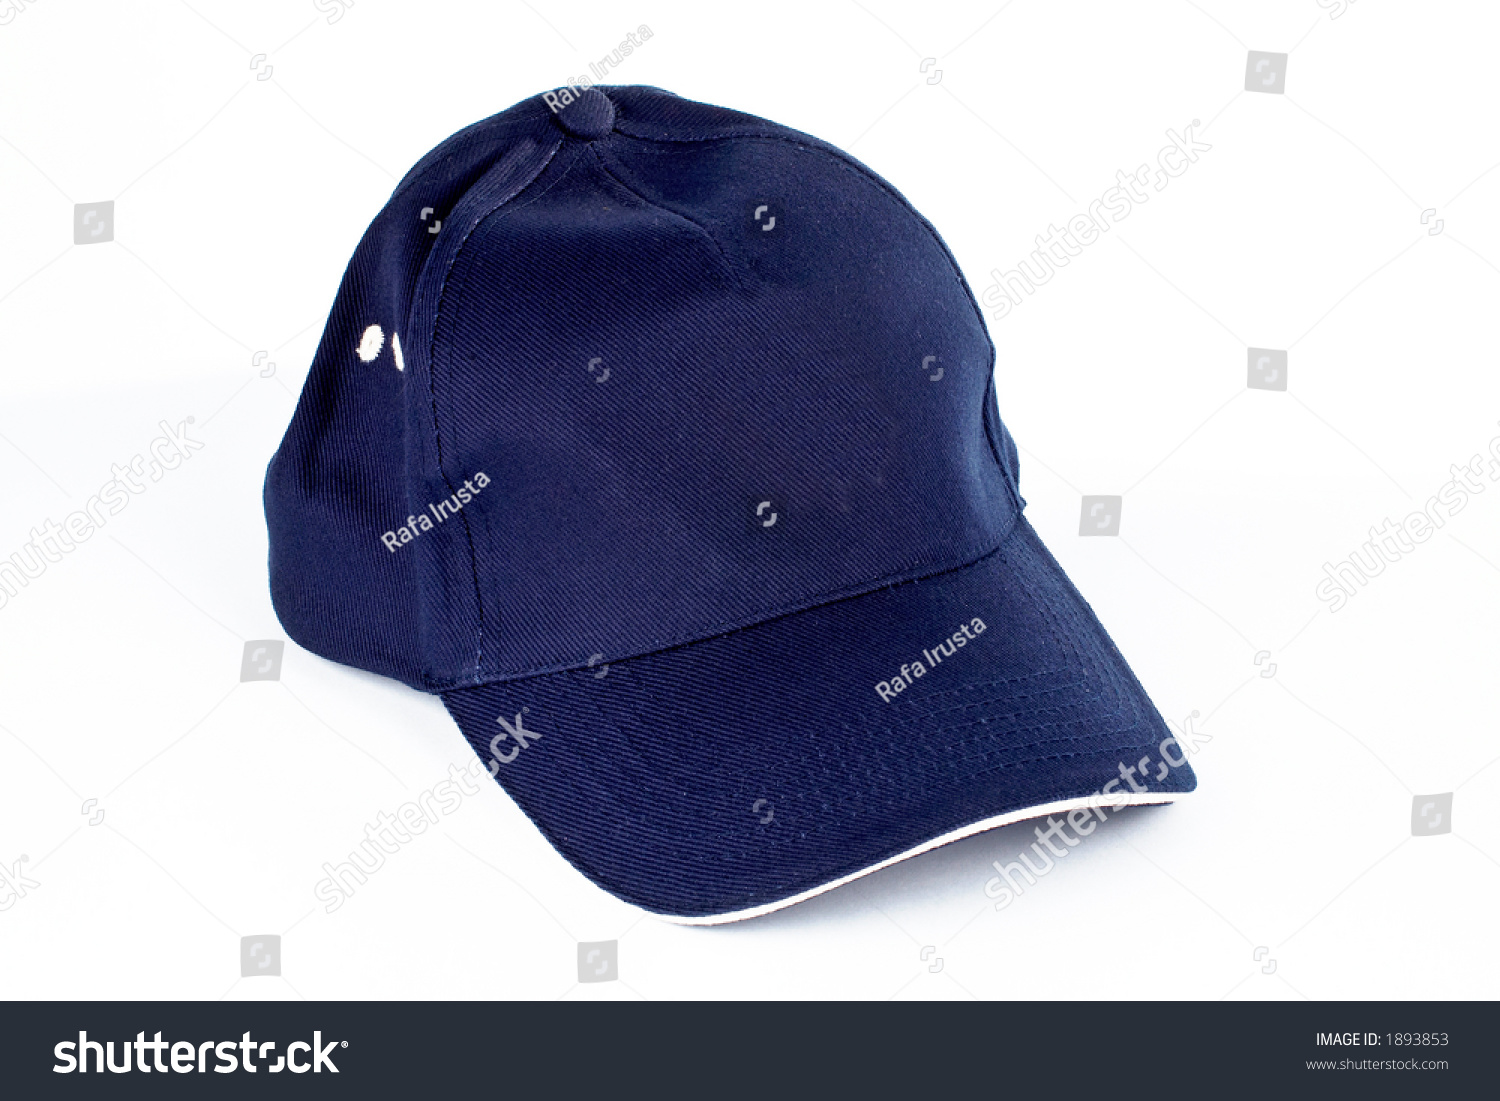 Baseball Cap On White Background Stock Photo 1893853 : Shutterstock